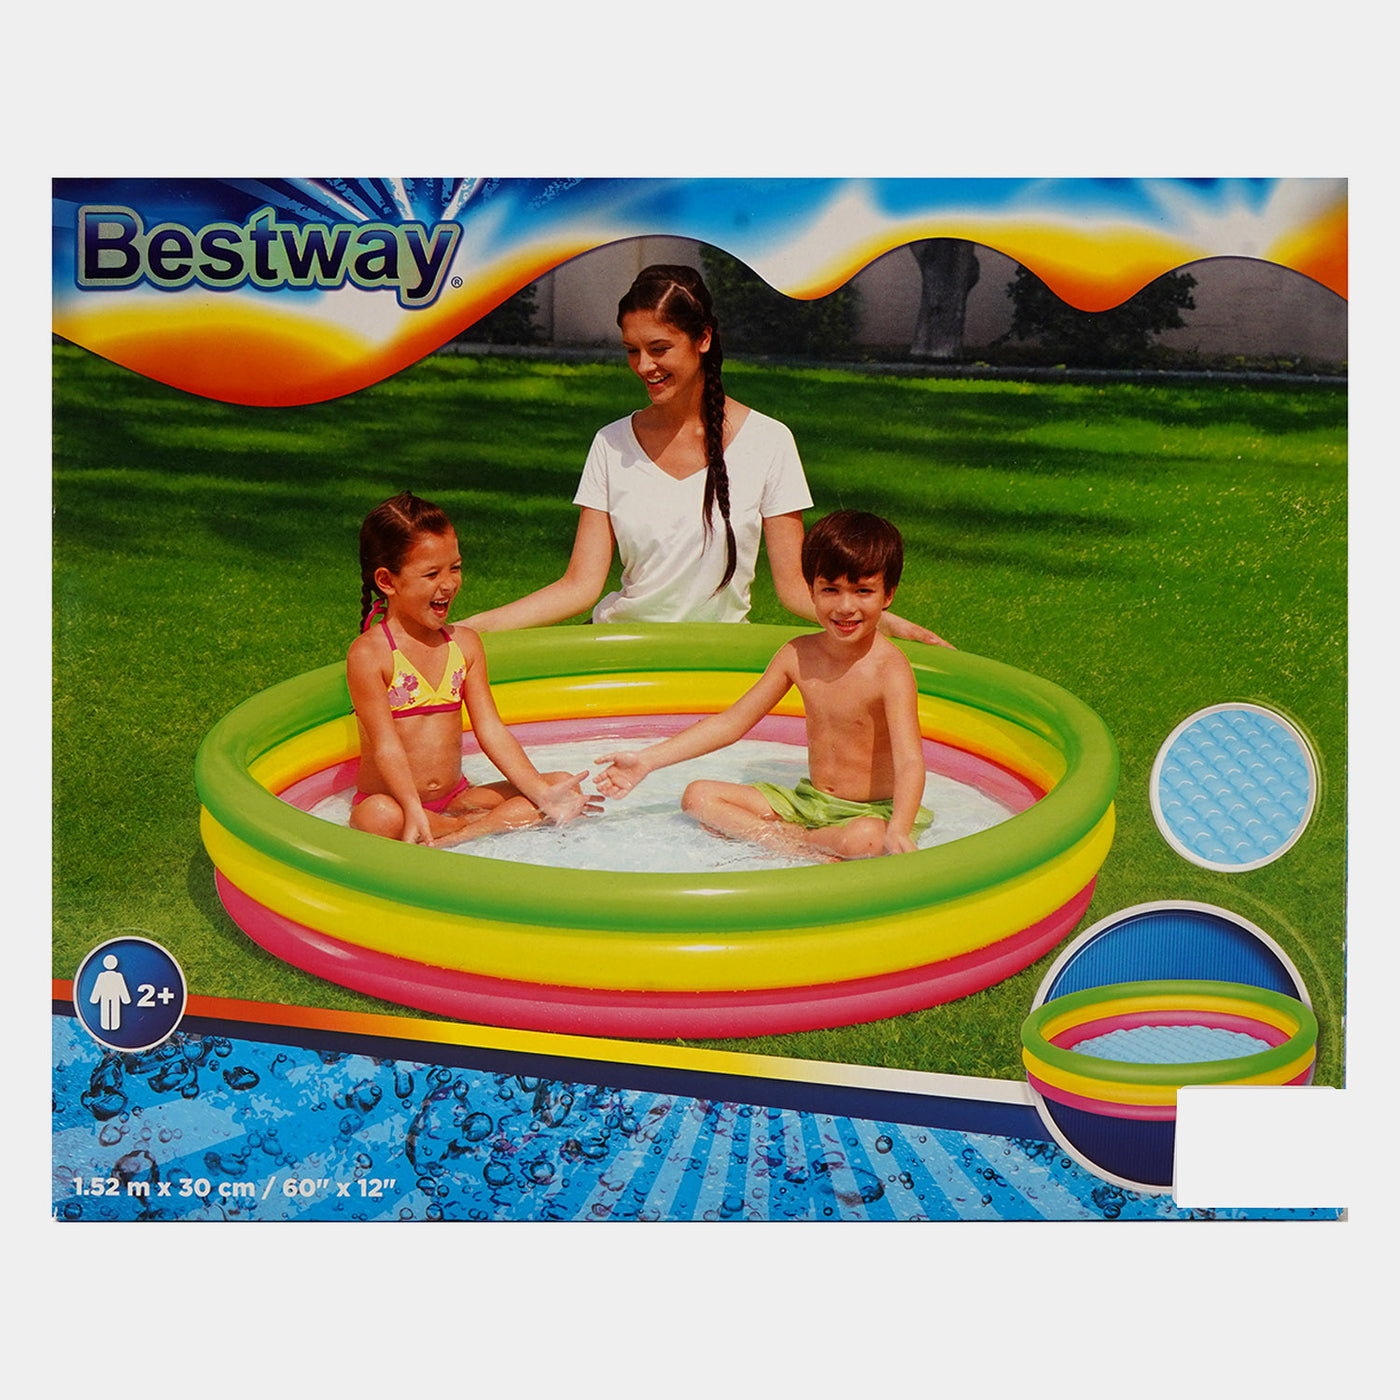 Bestway Pool For kids